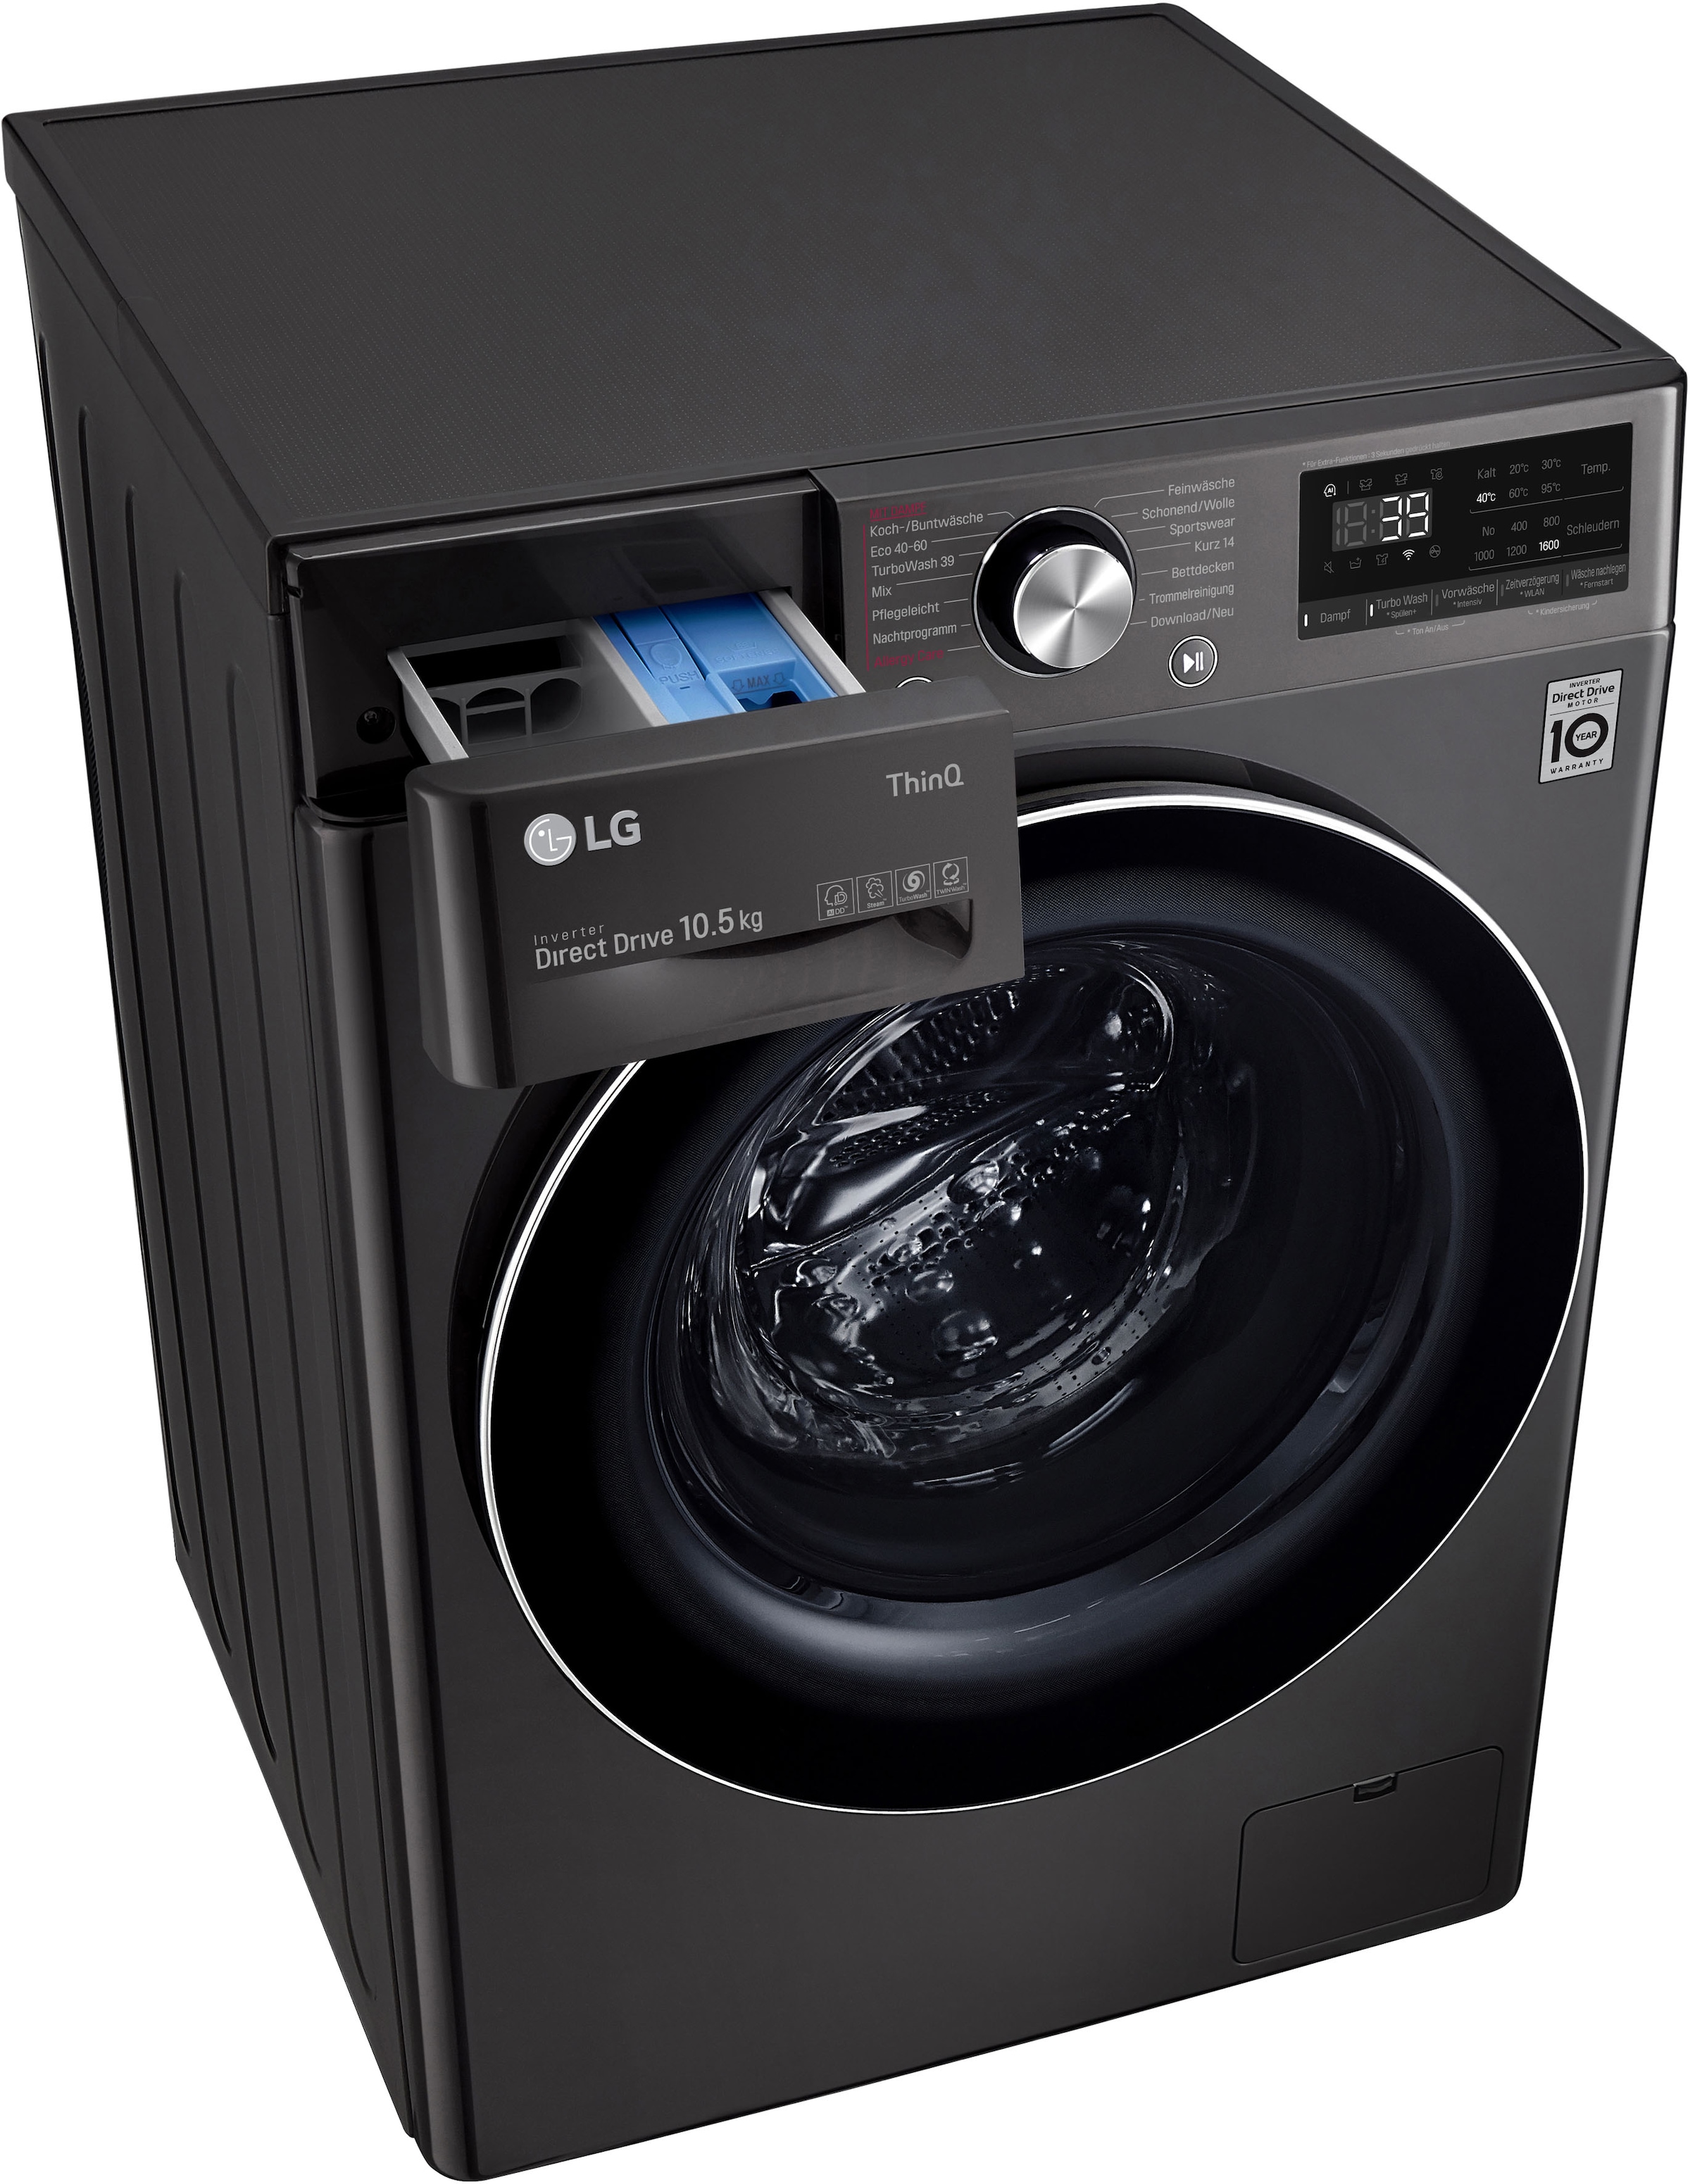 Jahren Waschen U/min, Garantie Waschmaschine XXL 1600 TurboWash® F6WV710P2S, mit in - 39 LG 10,5 3 »F6WV710P2S«, kg, nur Minuten